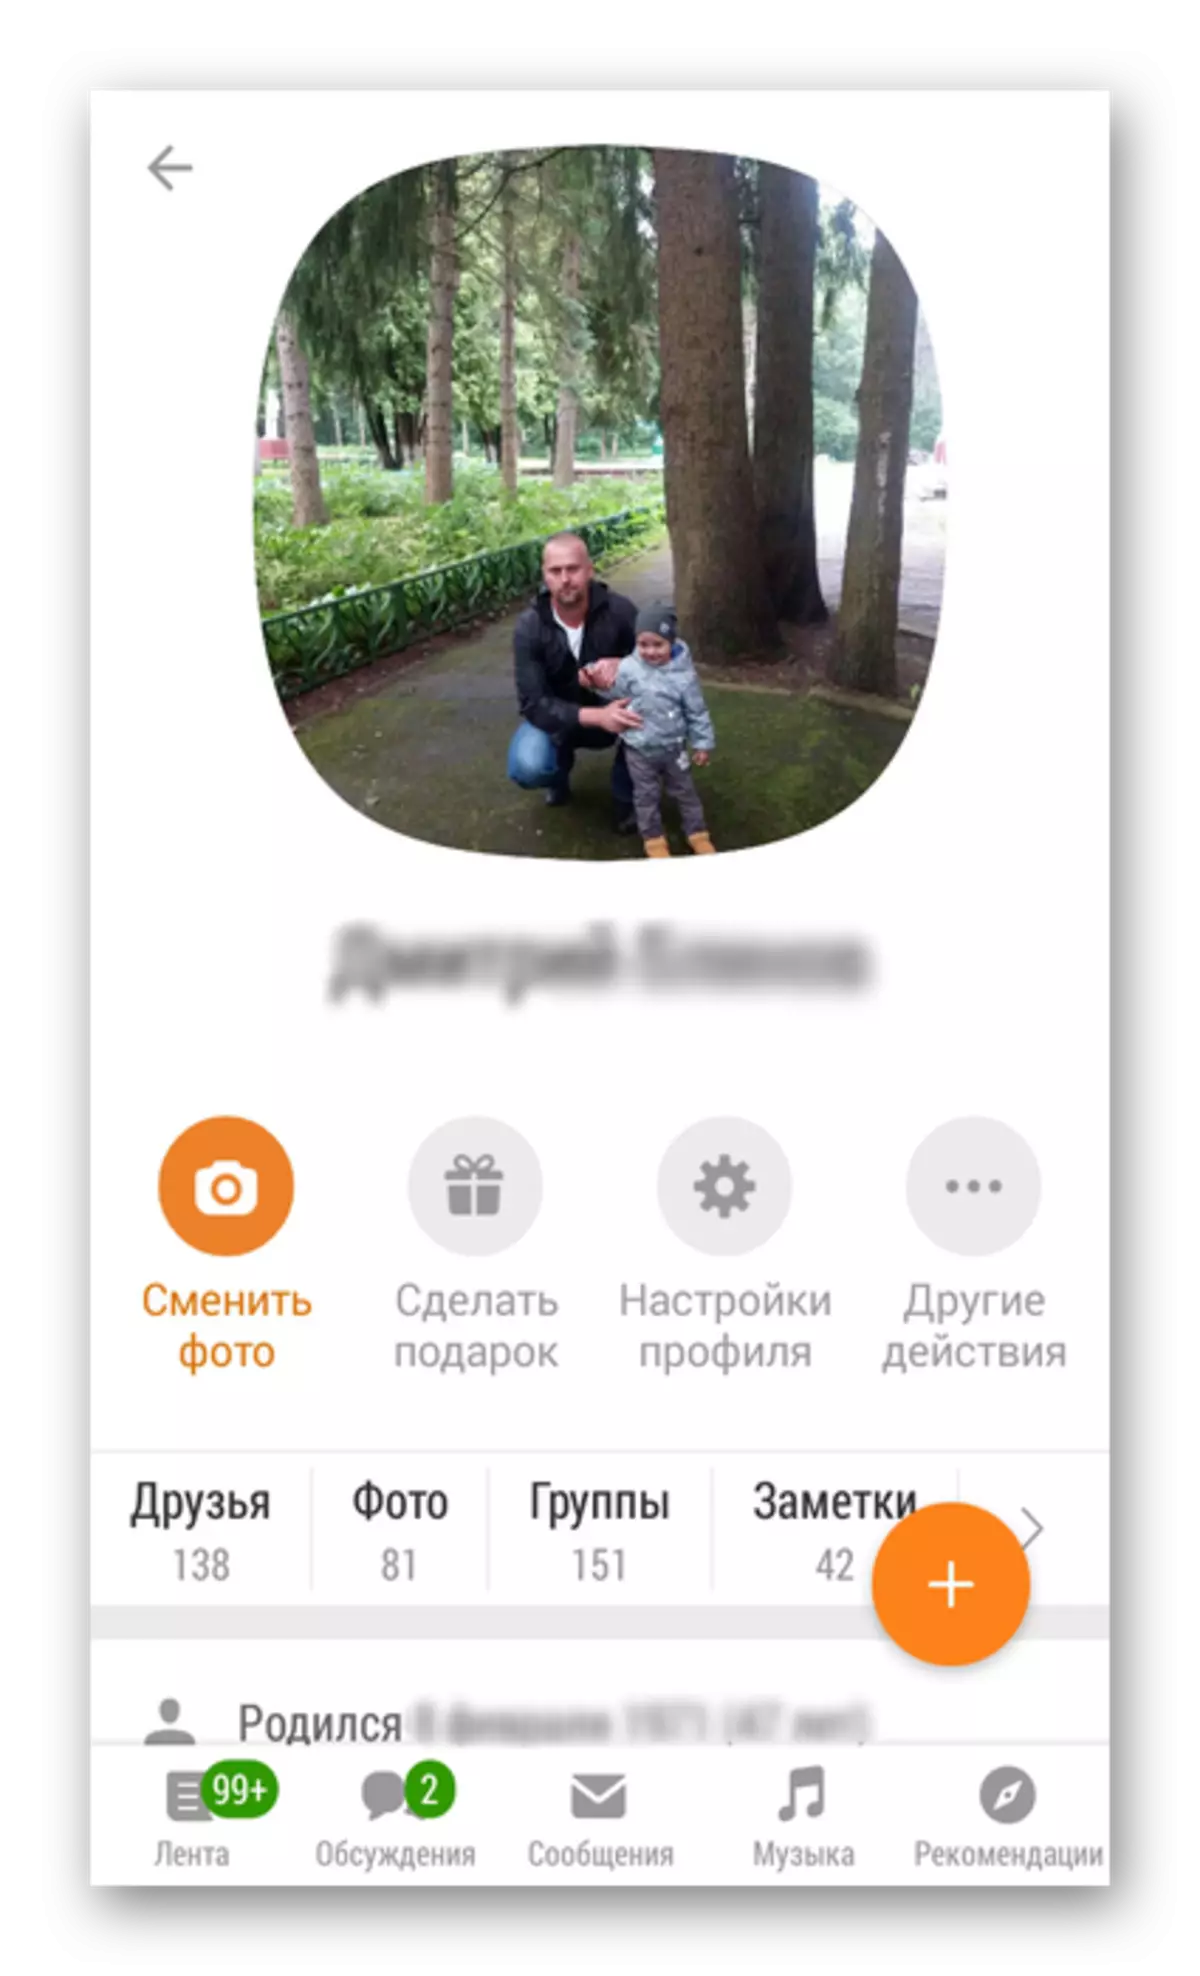 Profile louvri nan app odnoklassniki